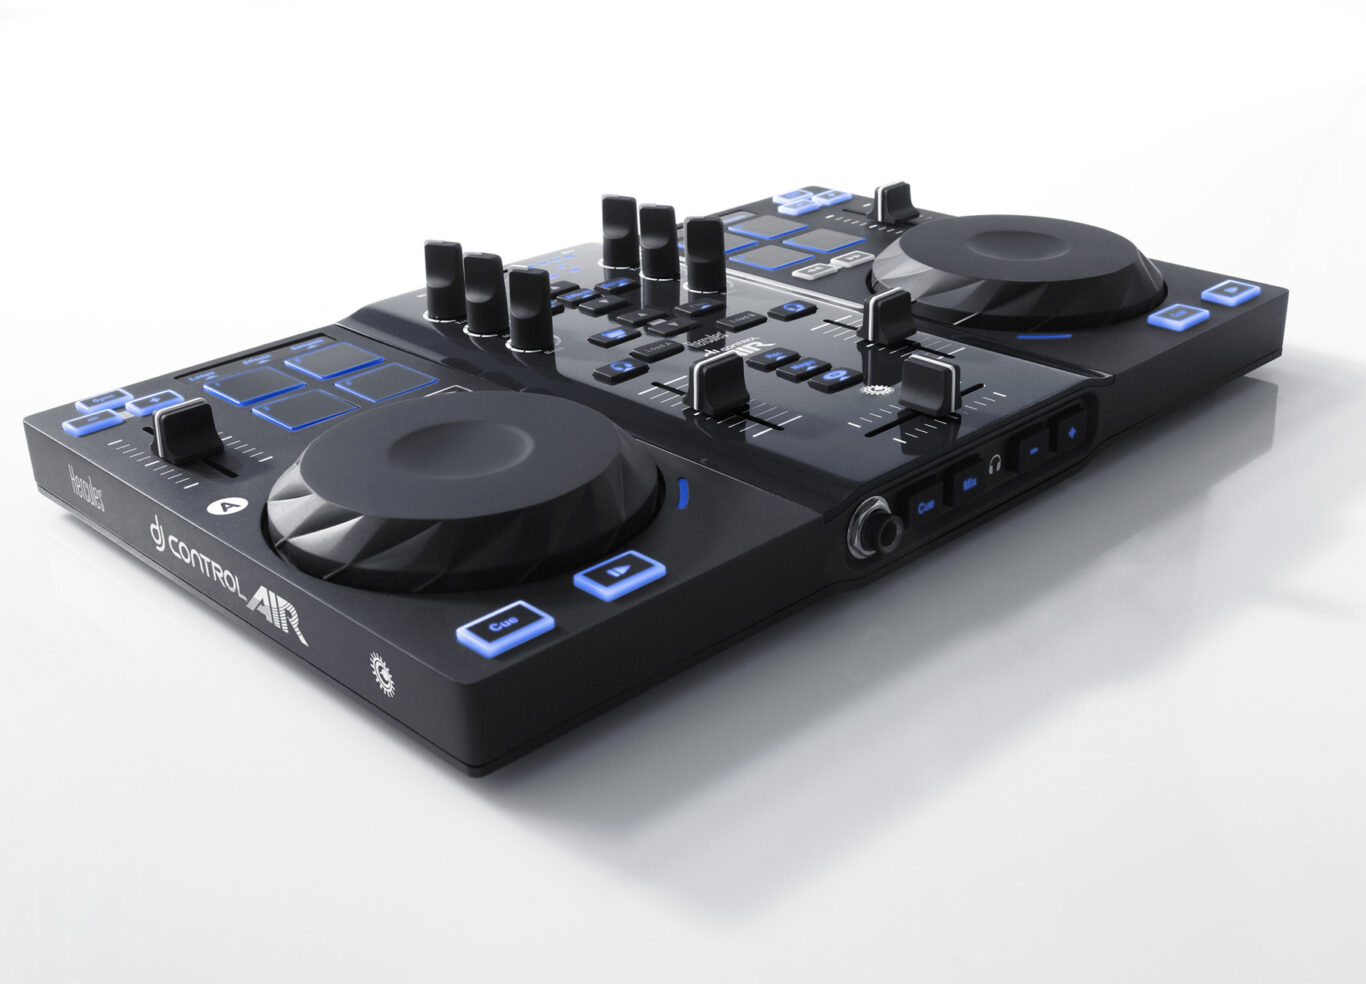 arq 2589 98516 1366x984 - Novo Controlador e Software para DJ